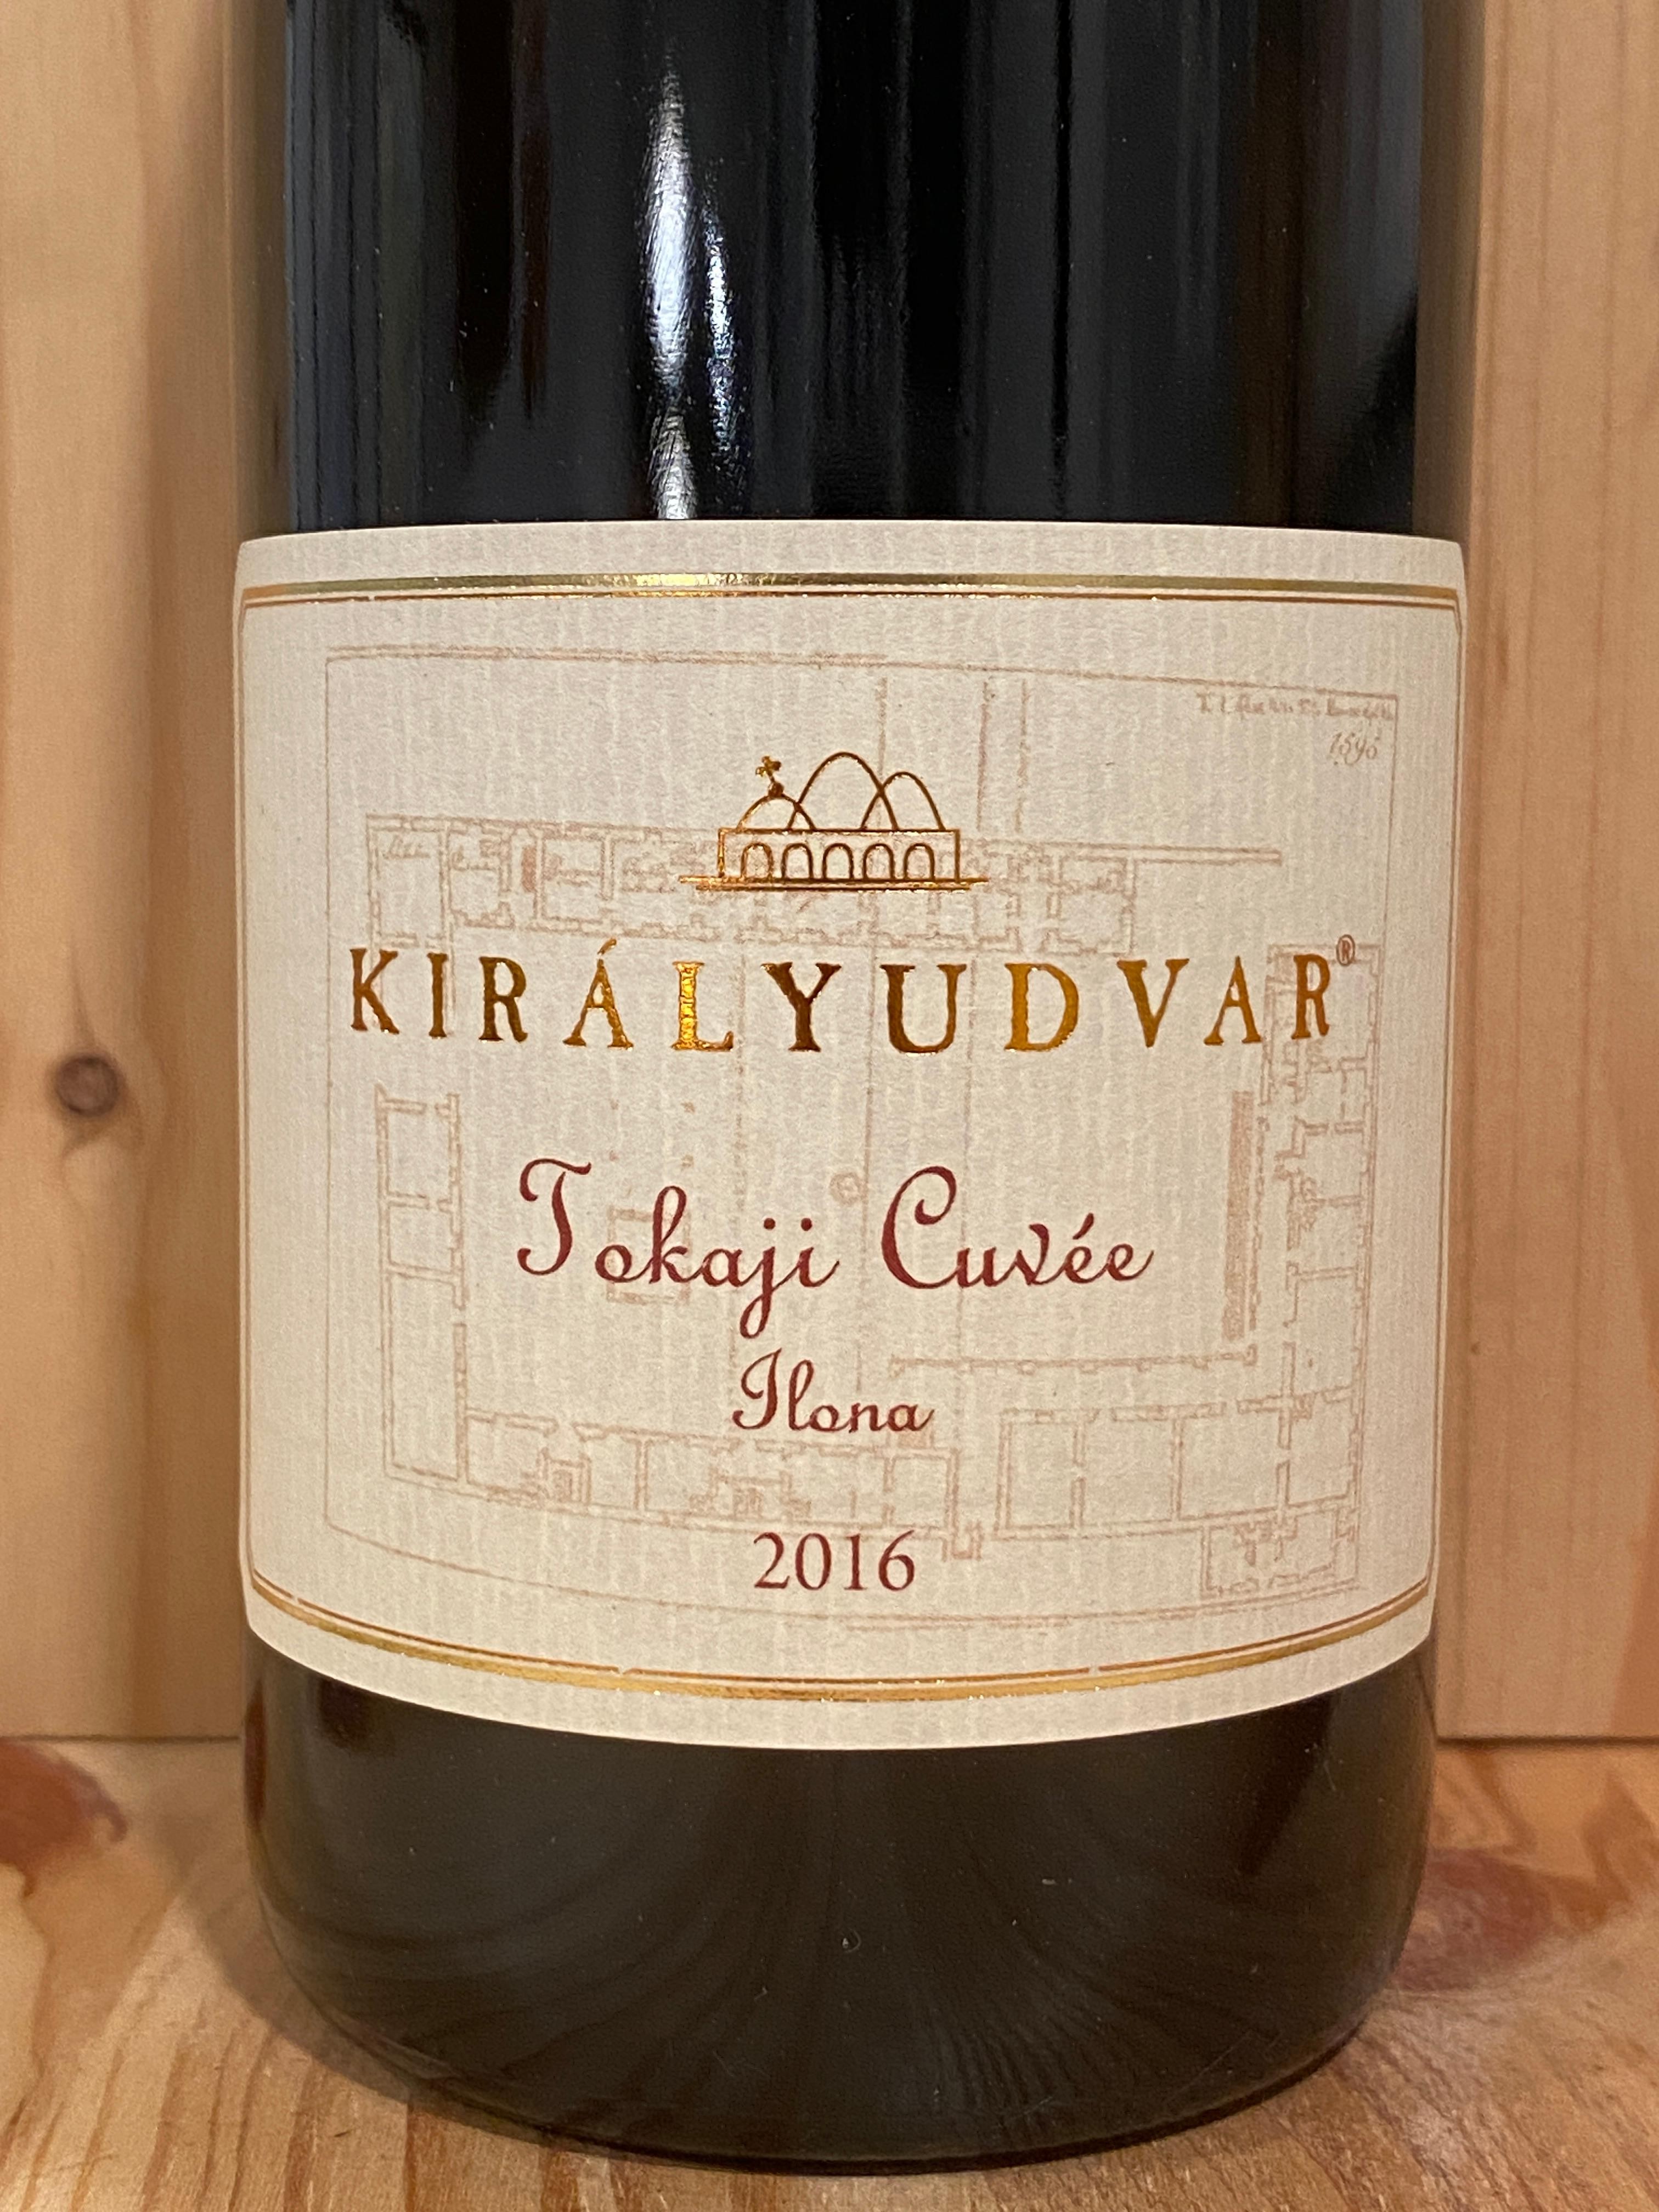 Királyudvar Tokaji "Cuvée Ilona" 2016: Tokaj, Hungary